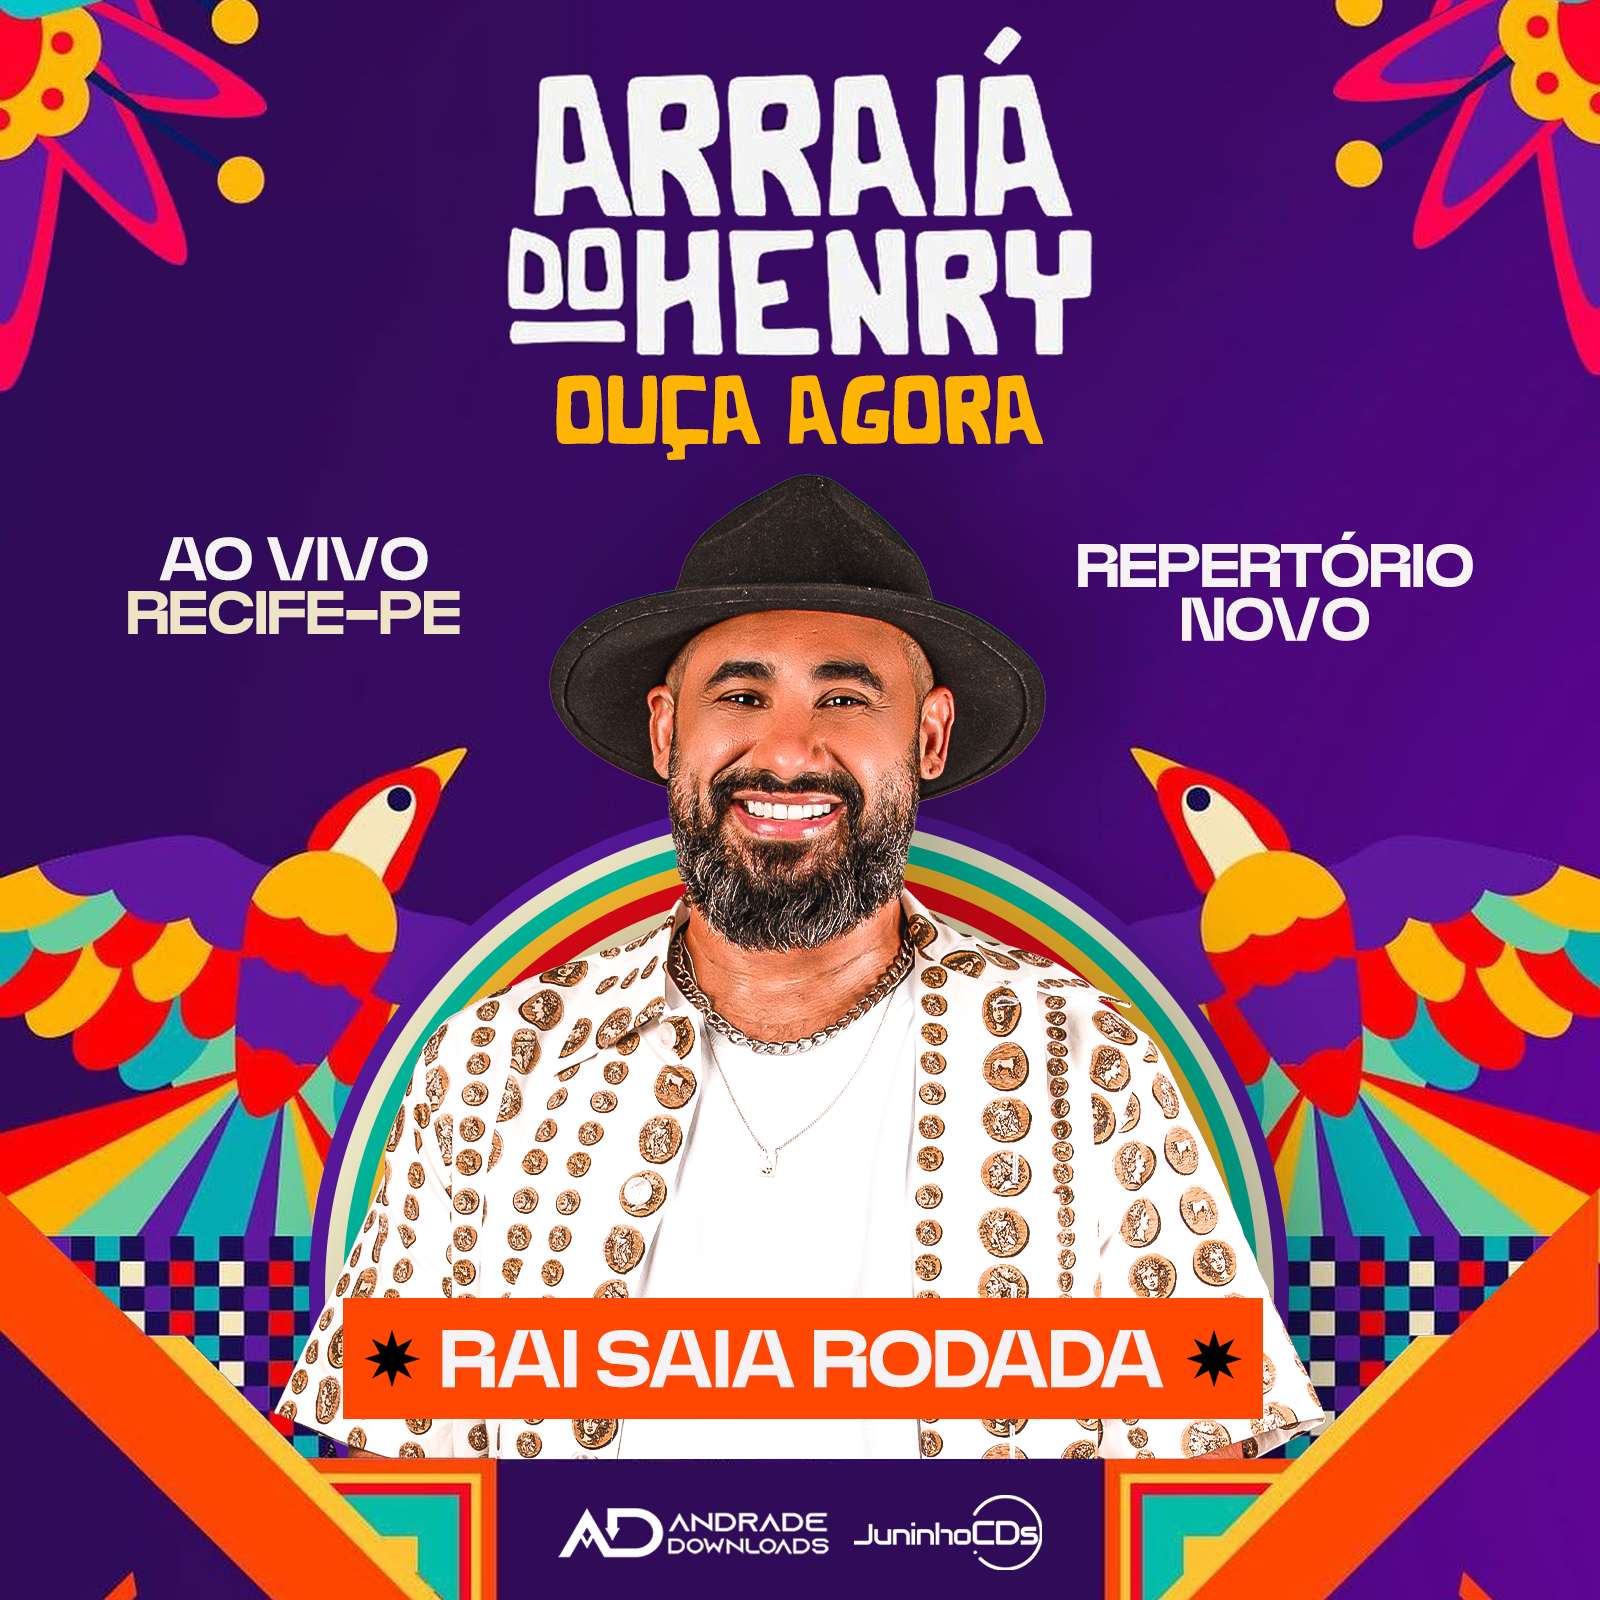 RAI FEED ARRAIA DO HENRY © ANDRADE DOWNLOADS - Baixar CDs, Baixar Musicas e Baixar Shows